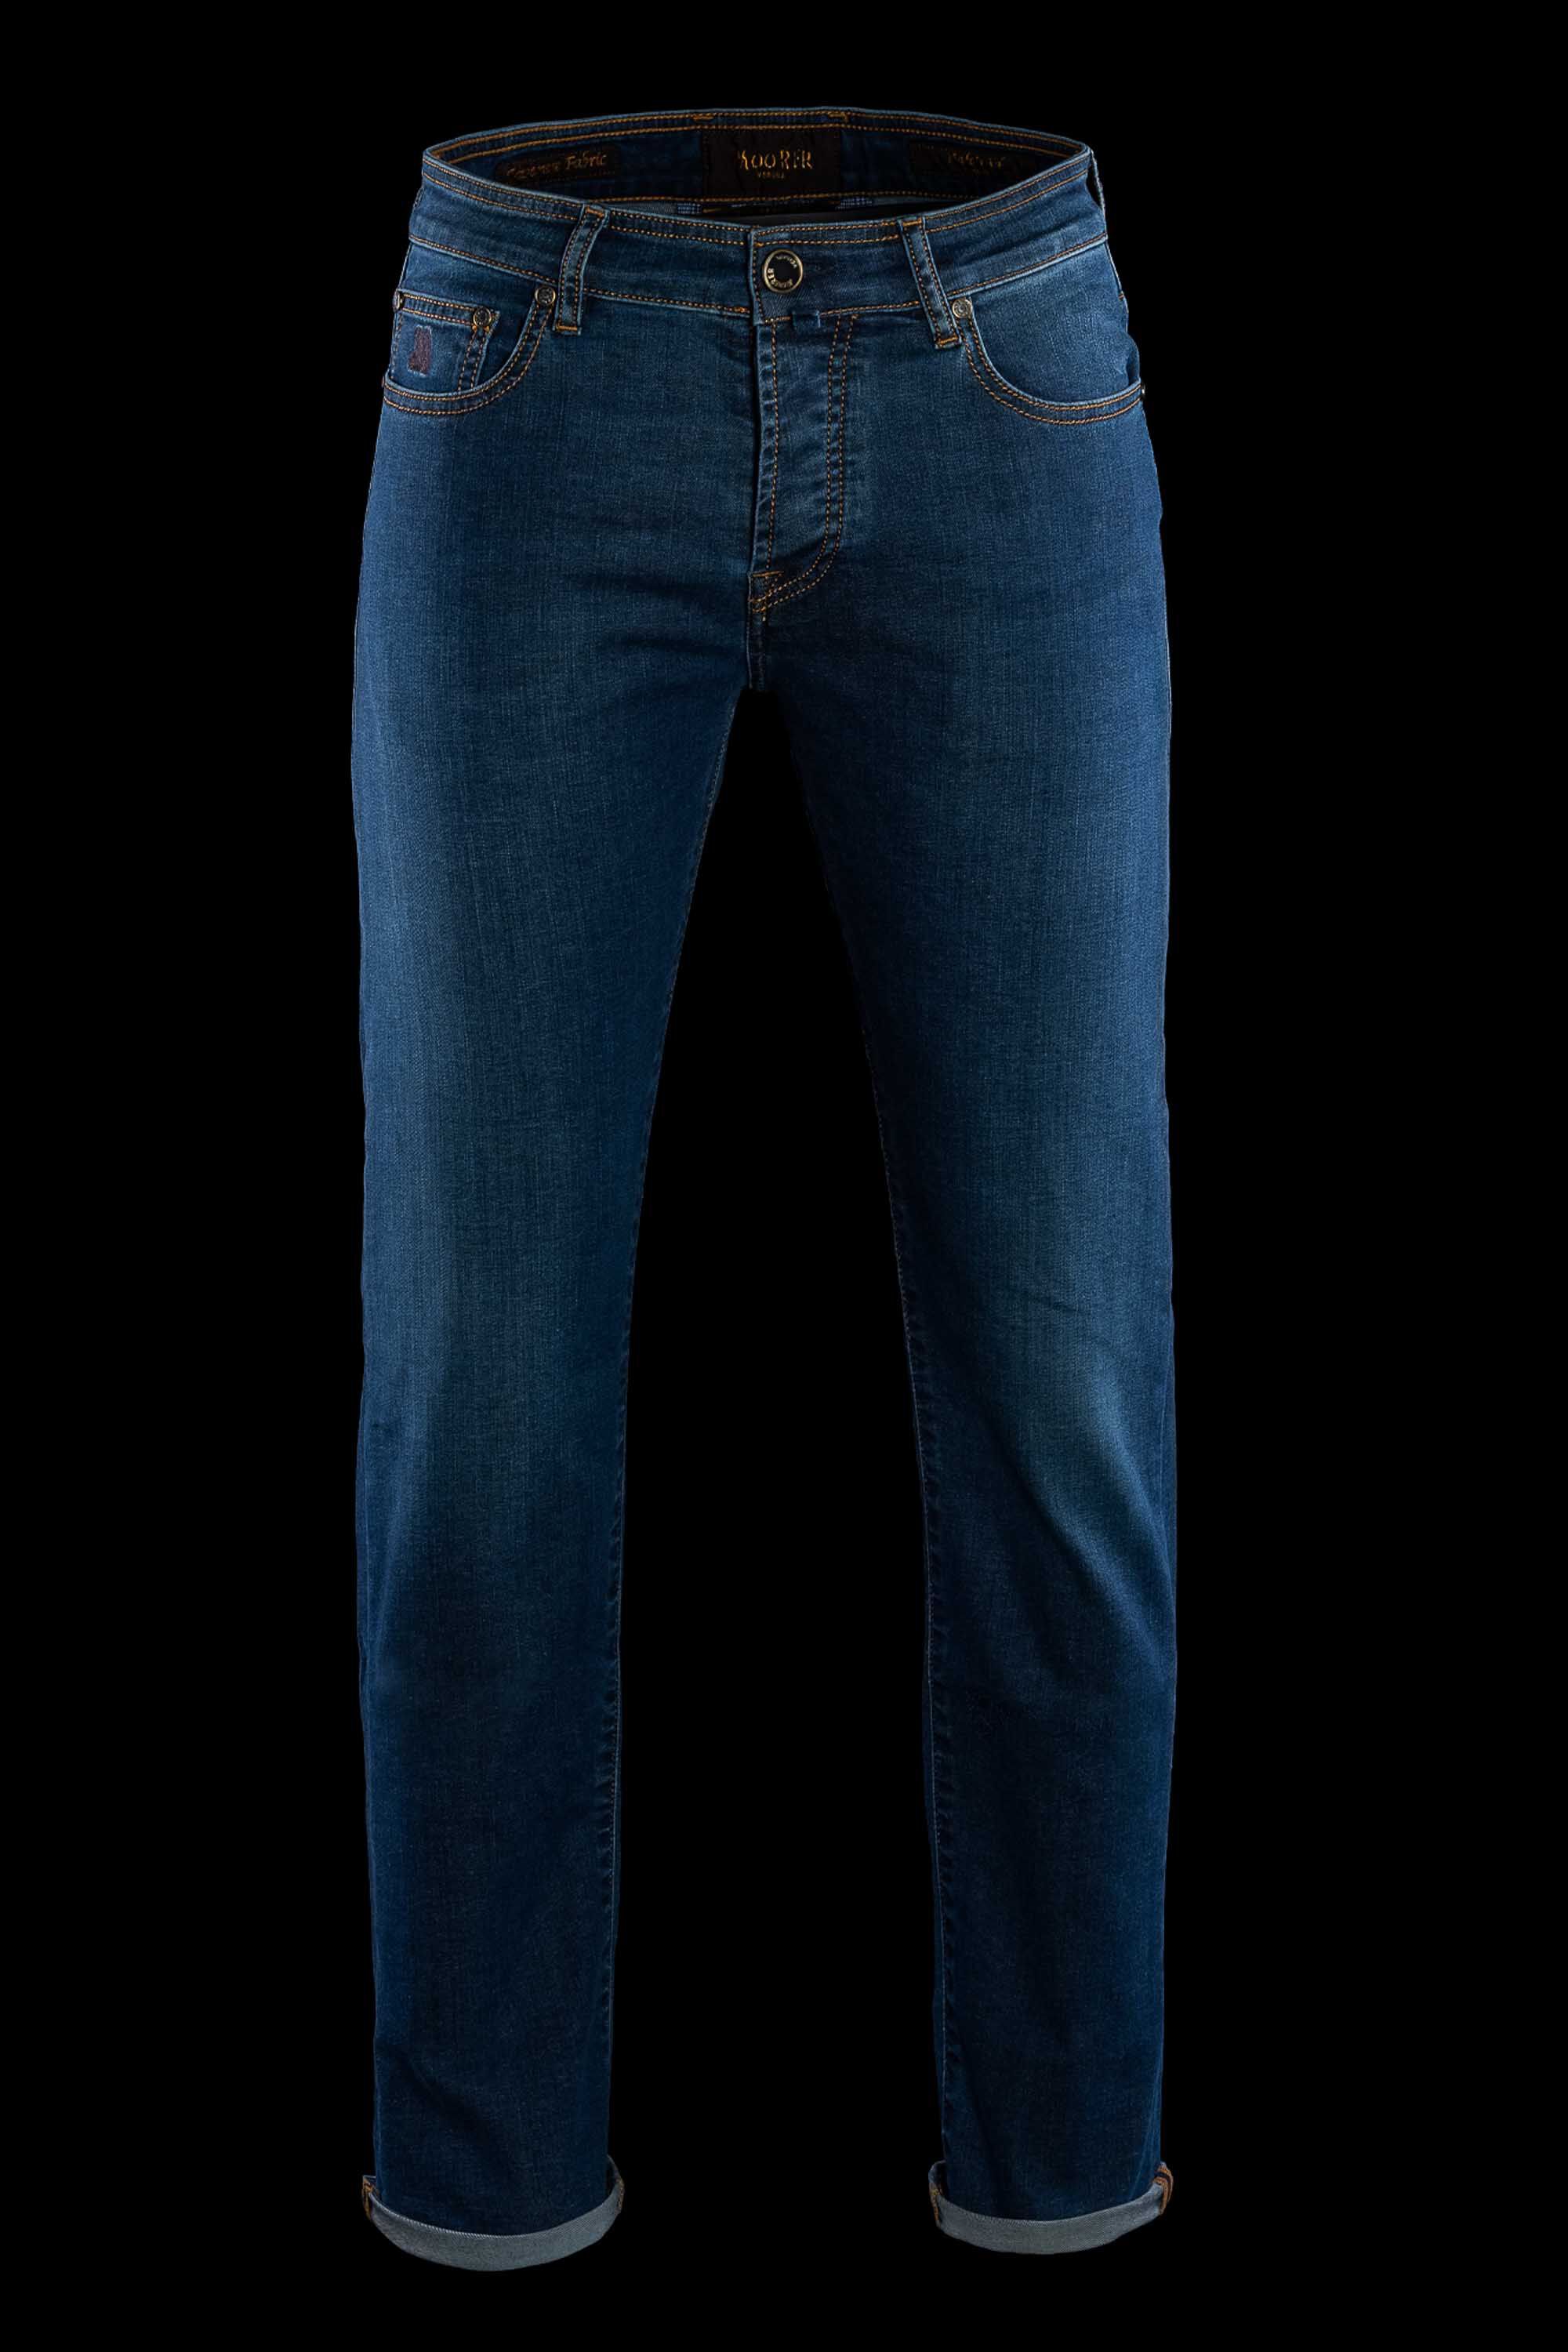 Men's Luxury Pants, Chinos & Jeans - Italian Pants | MooRER®